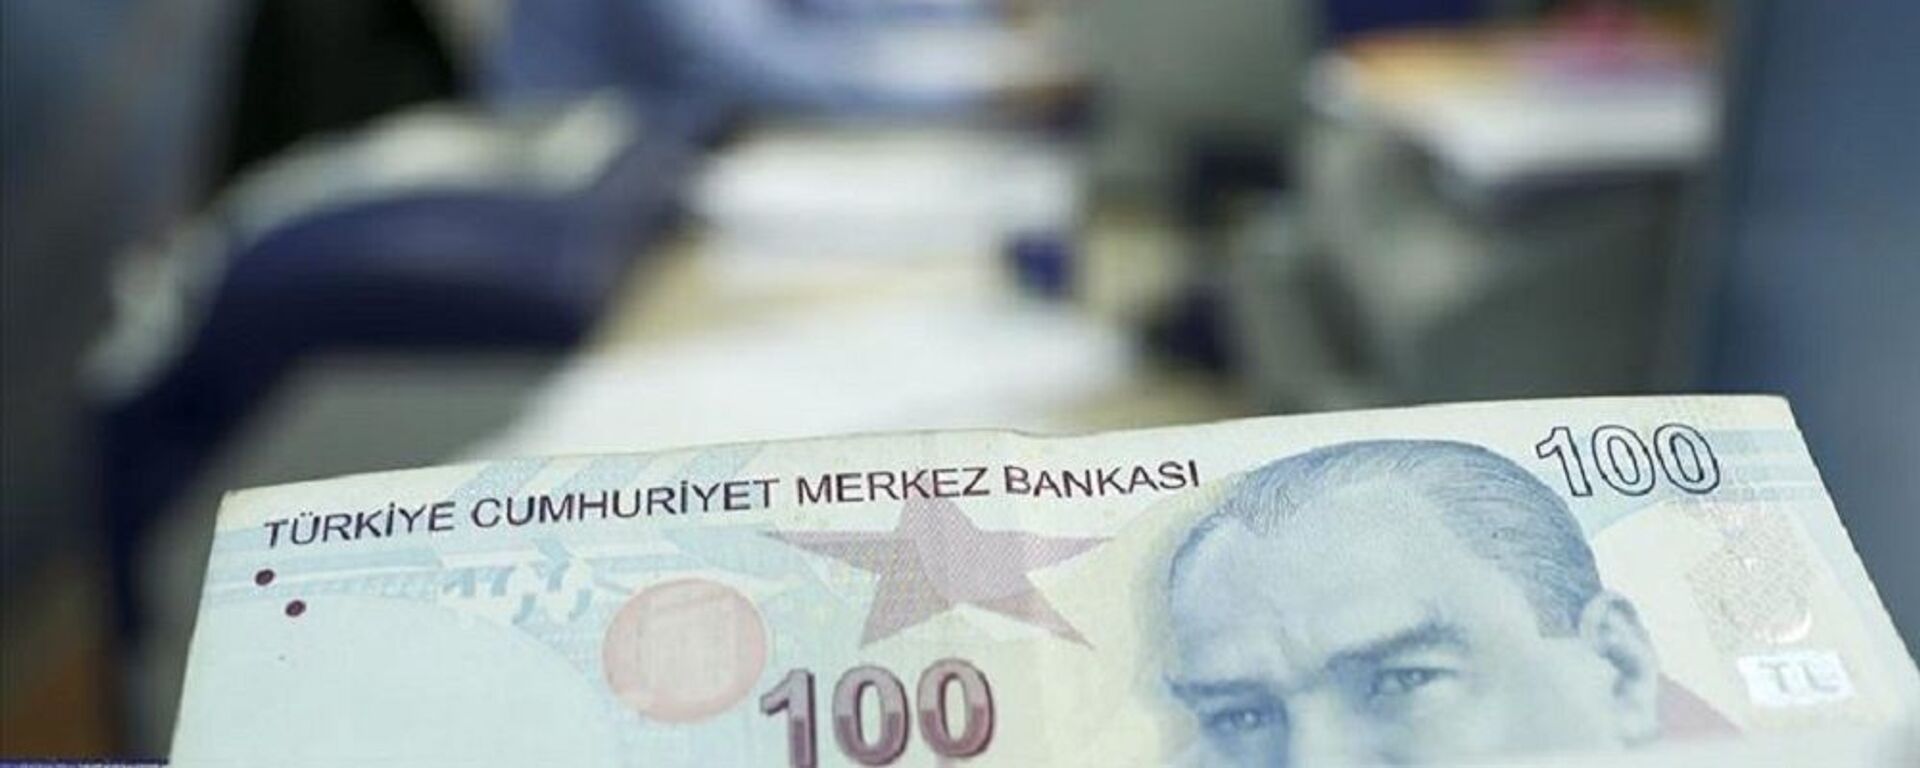 kısa çalışma ödeneği, türk lirası, banka, para - Sputnik Türkiye, 1920, 31.12.2021